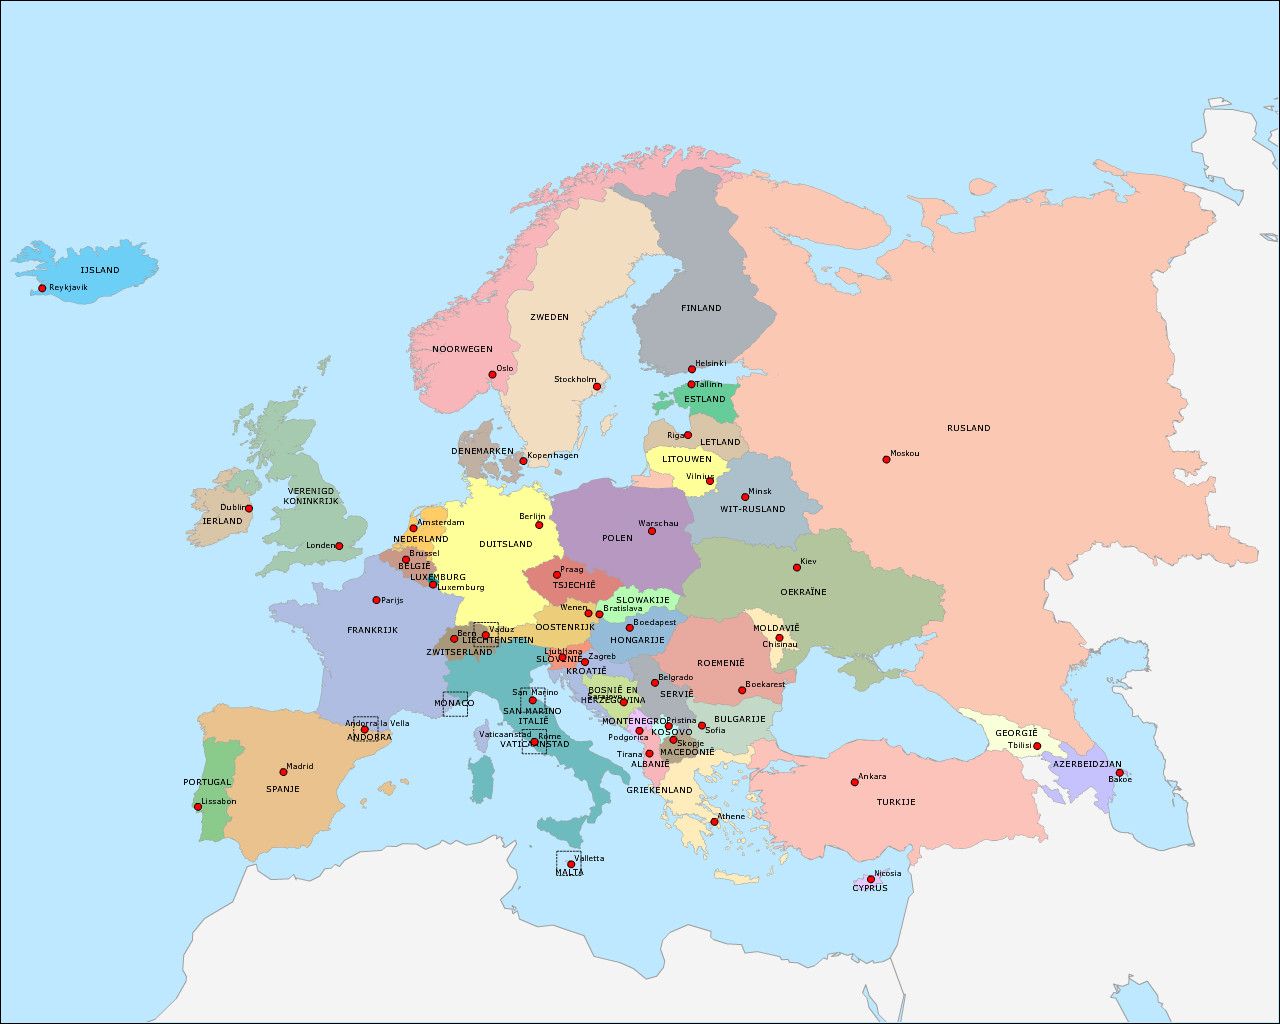 Wakker worden Mitt Sandy Topografie Landen en hoofdsteden van Europa (deel 2) | www.topomania.net